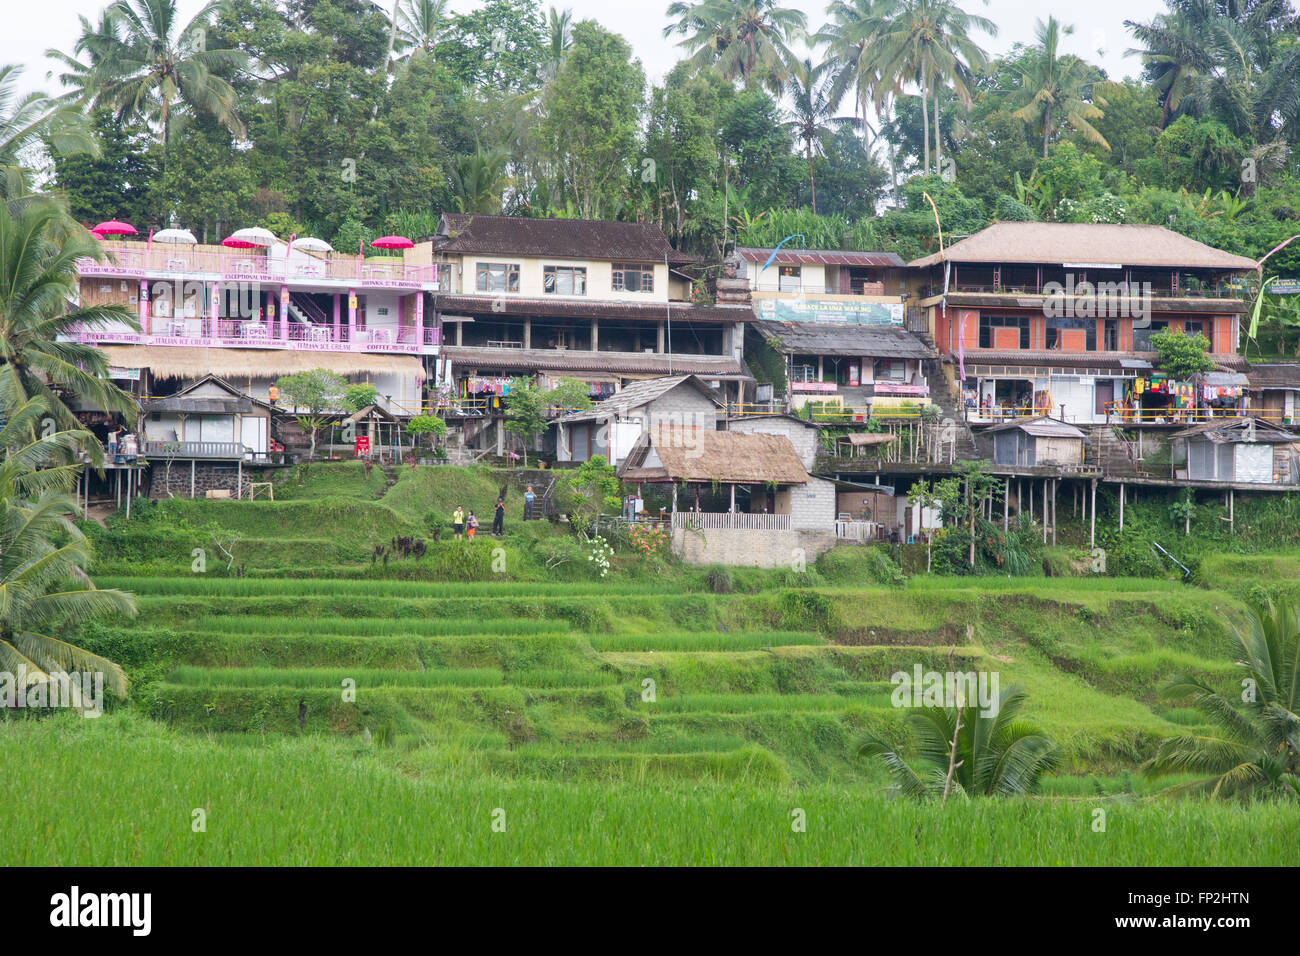 L'Asie, l'INDONÉSIE, Bali. Village coloré maisons et des magasins près de rizières en terrasses Subak de l'île de Bali, Indonésie. Banque D'Images